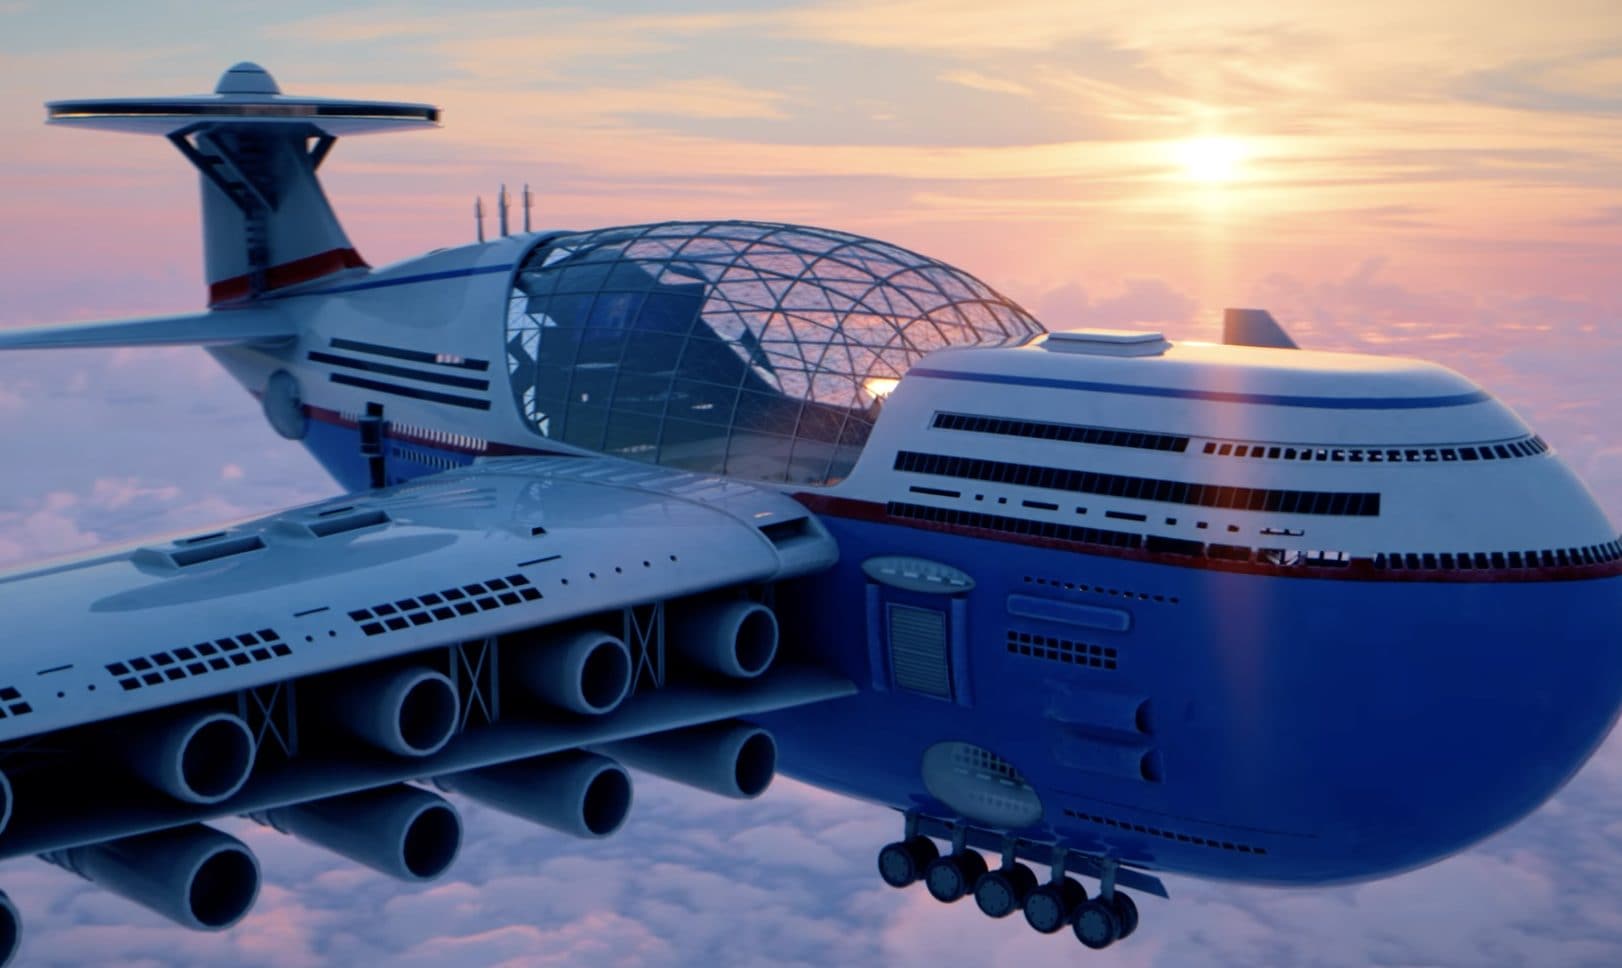 Sky Cruise aereo del futuro